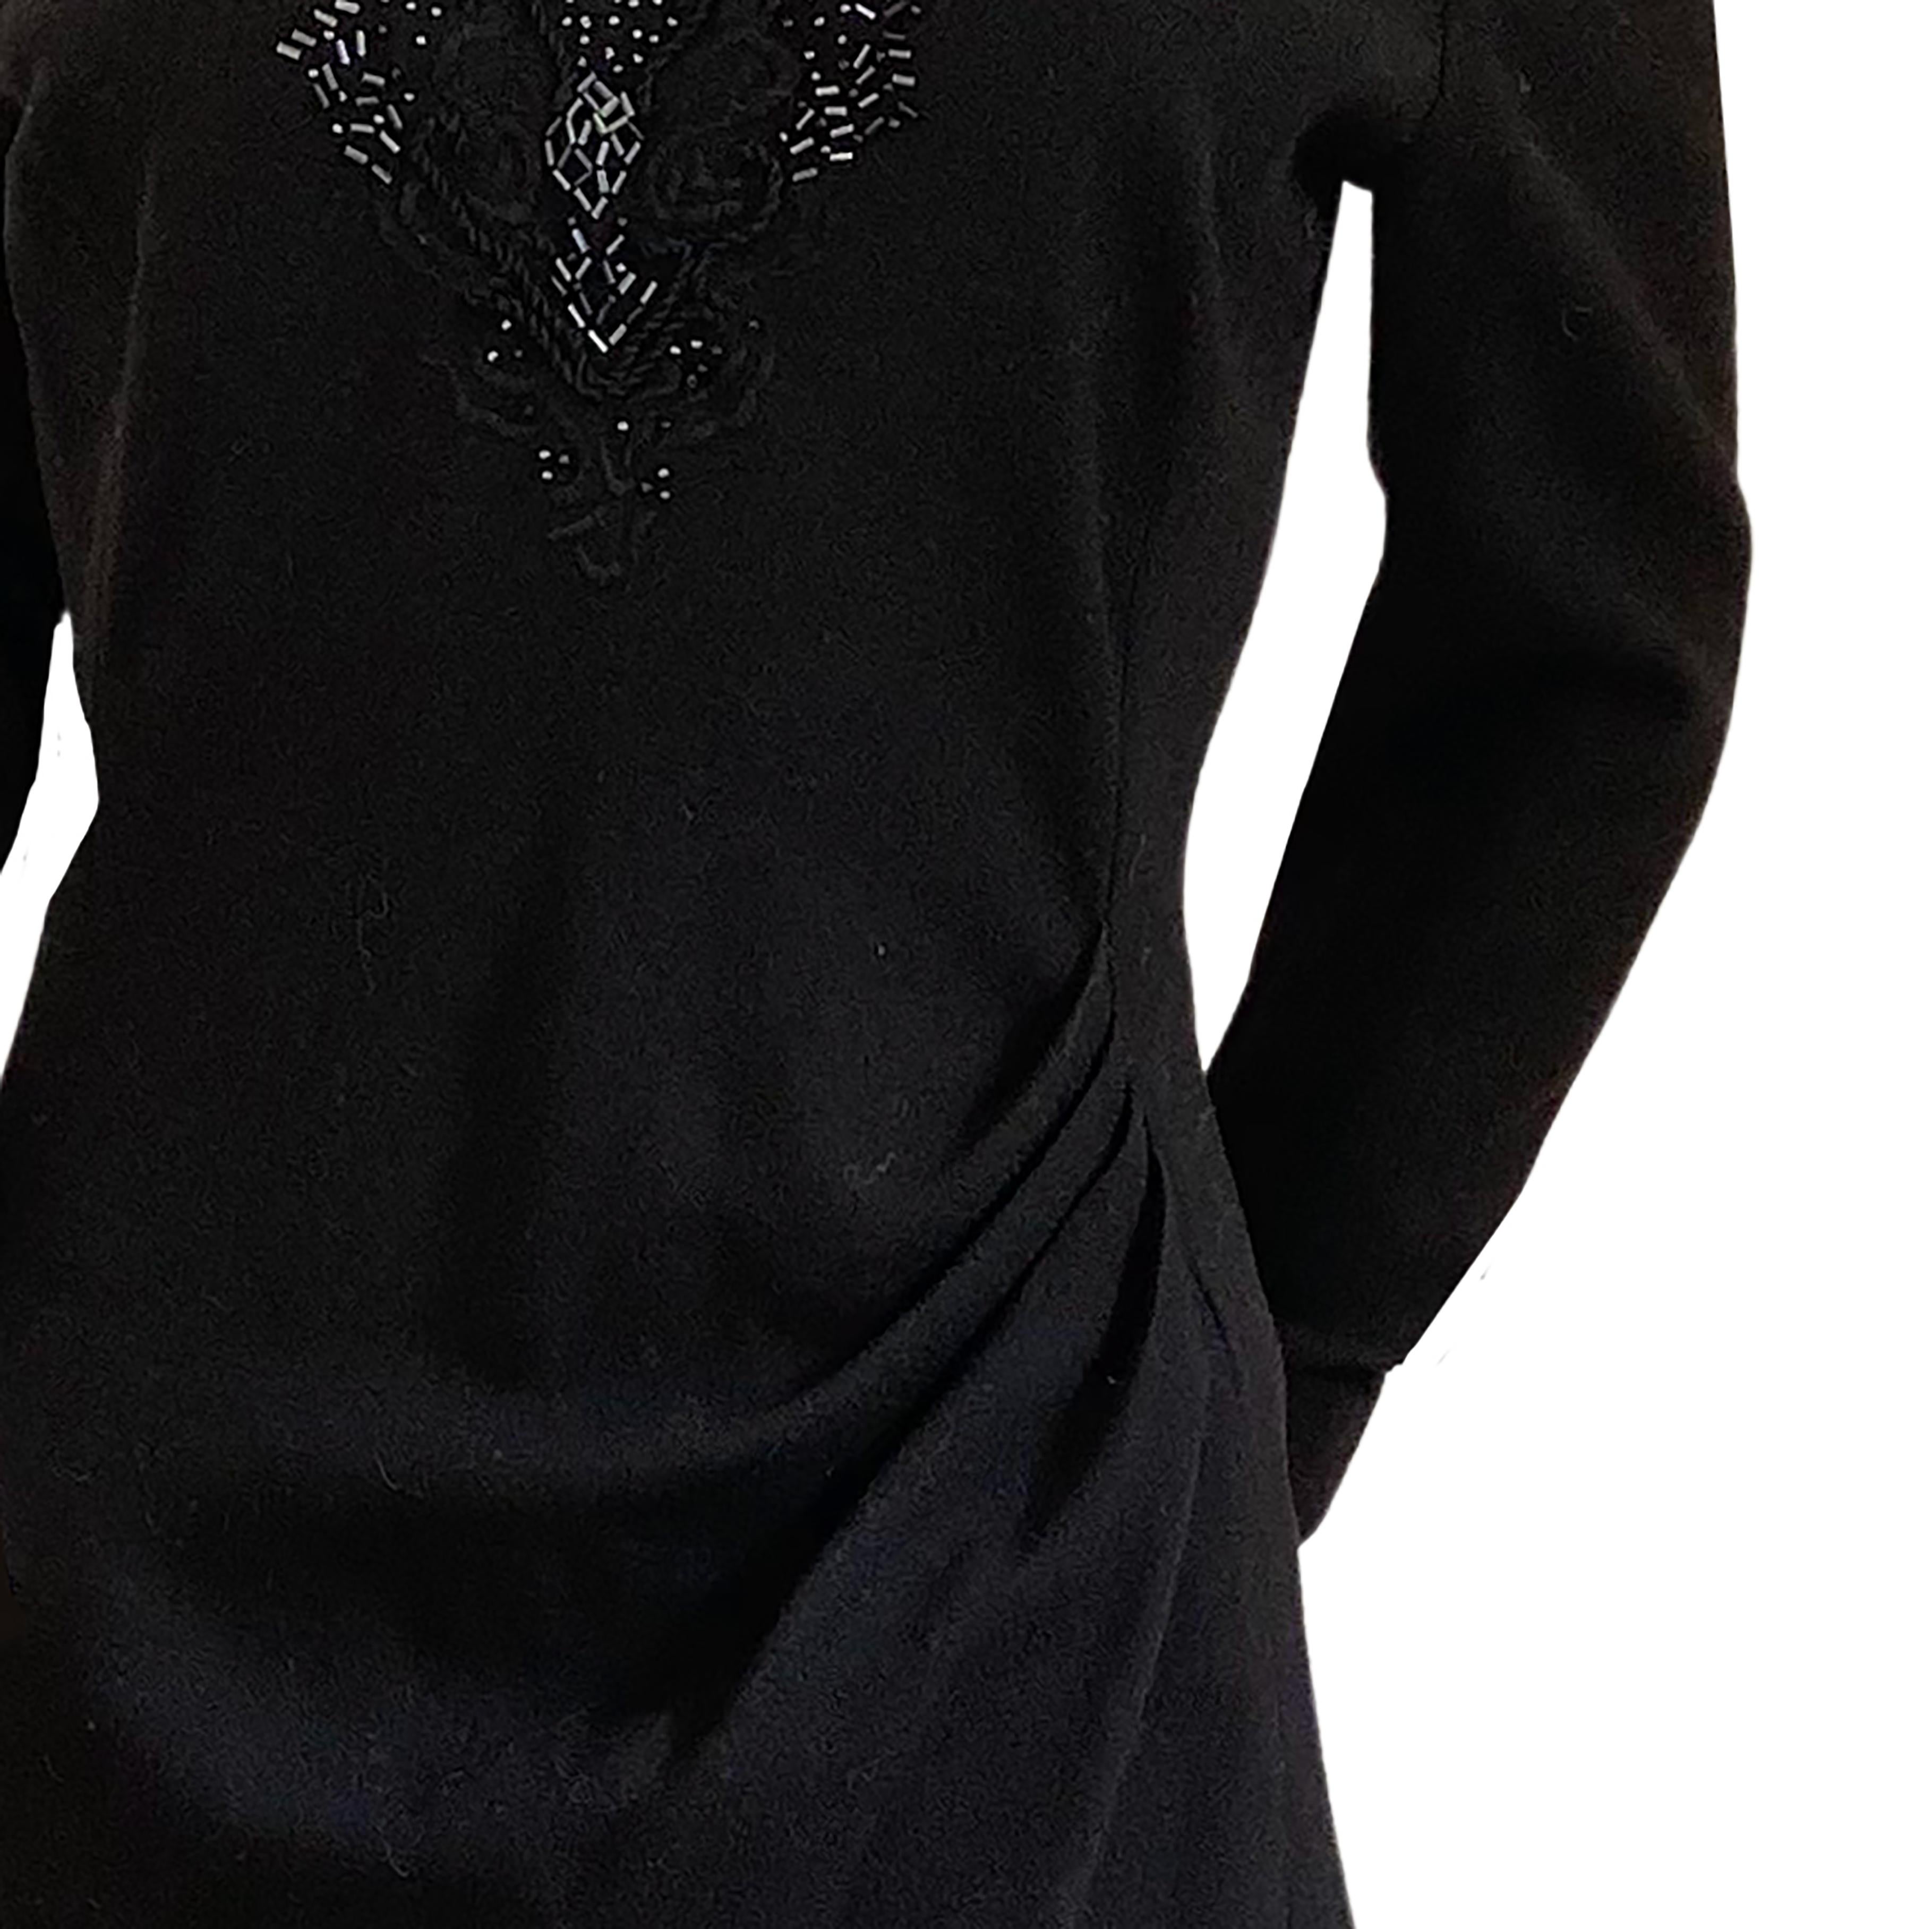 Noir Emmanuelle Khanh - Robe longue drapée en laine noire portée et embellie, fabriquée en France en vente